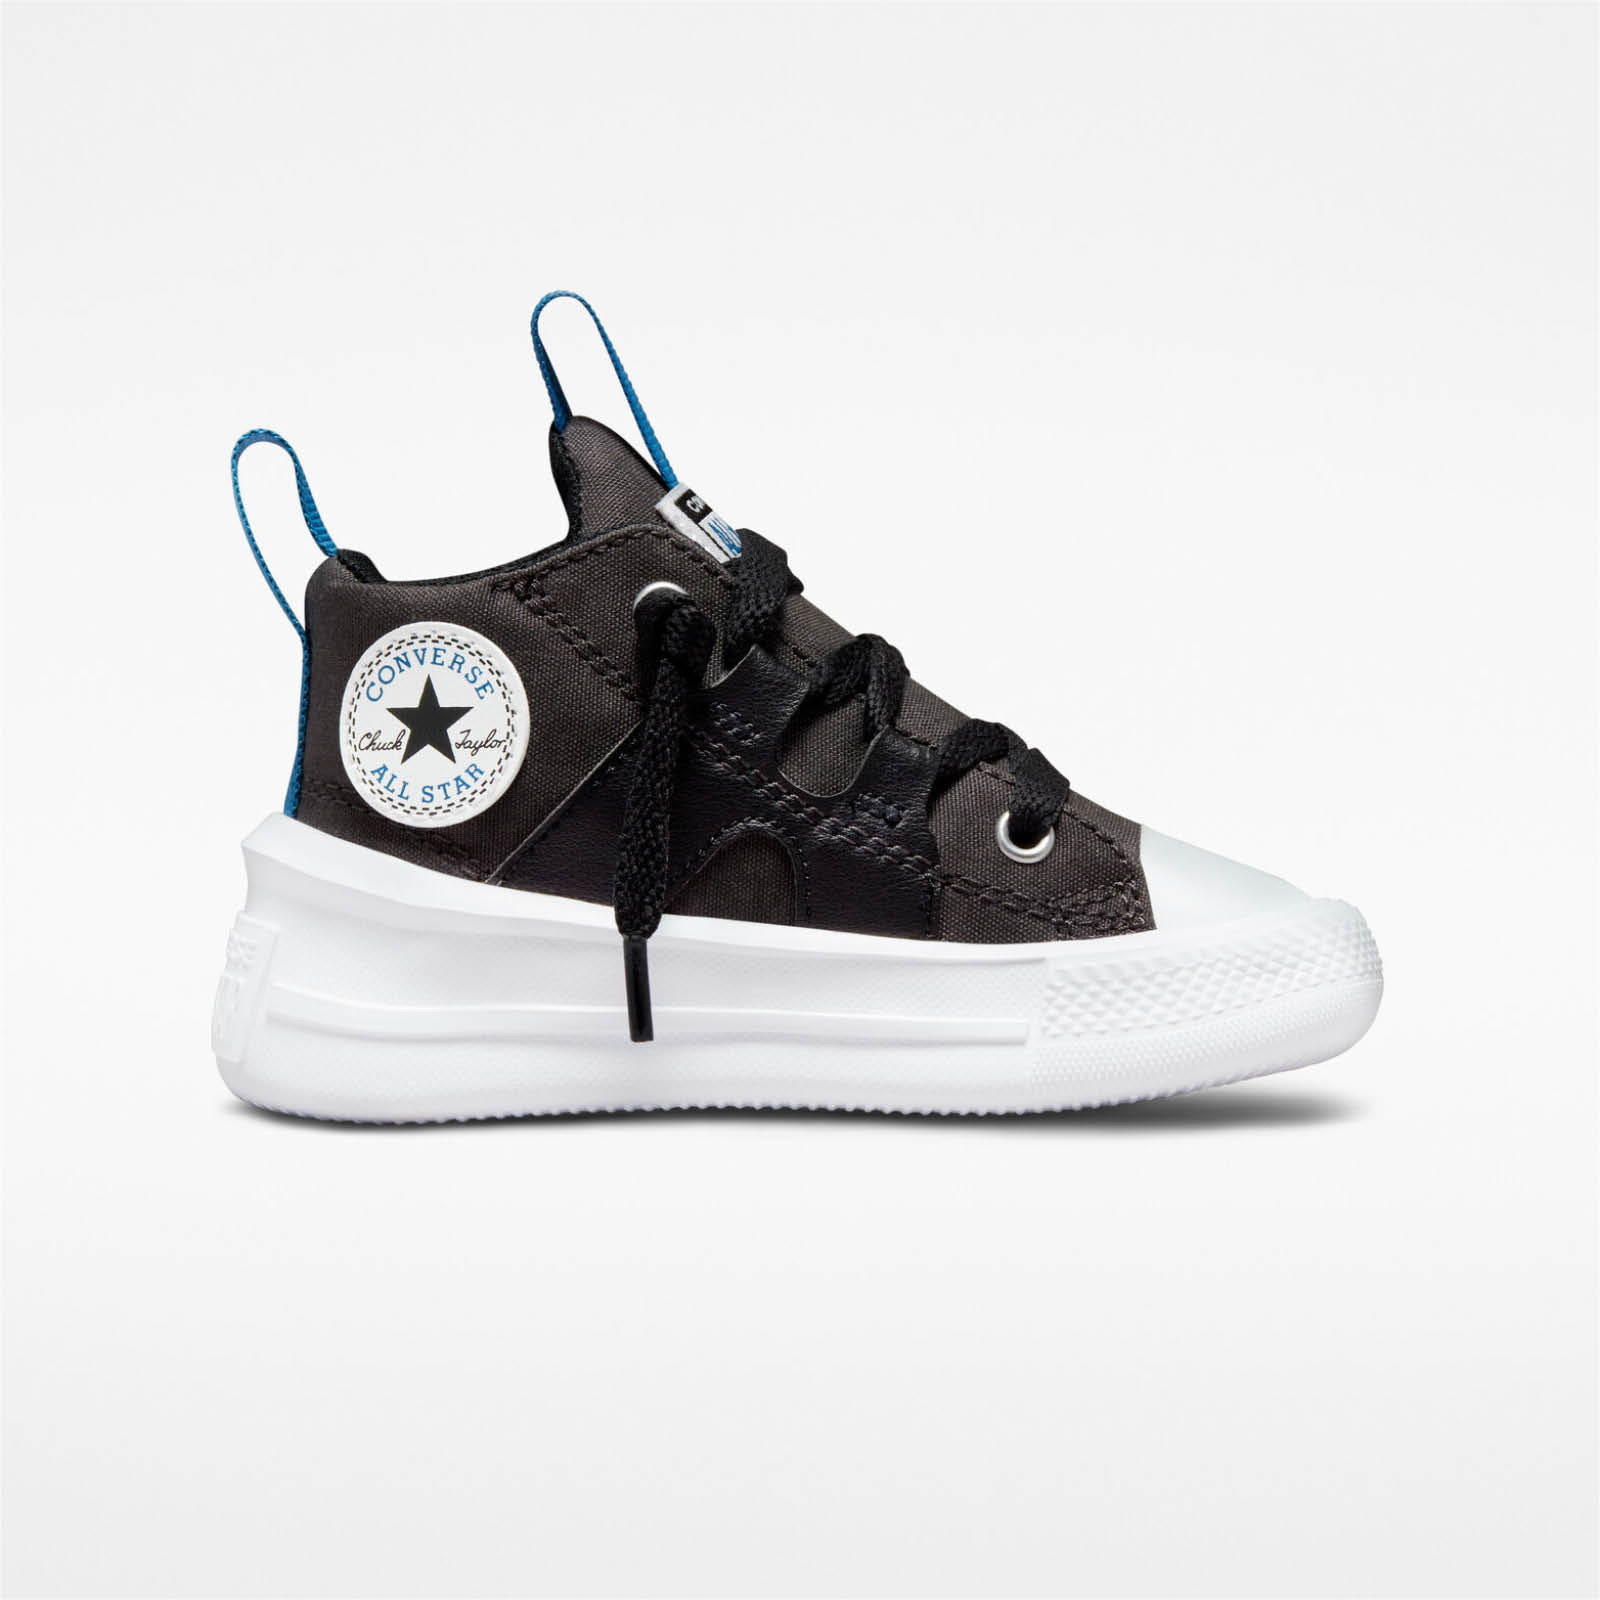 Παιδικά > Παπούτσια > Sneaker > Παπούτσι Mid Cut Converse - CHUCK TAYLOR ALL STAR ULTRA COLOR POP - 021-STORM WIND/BLACK